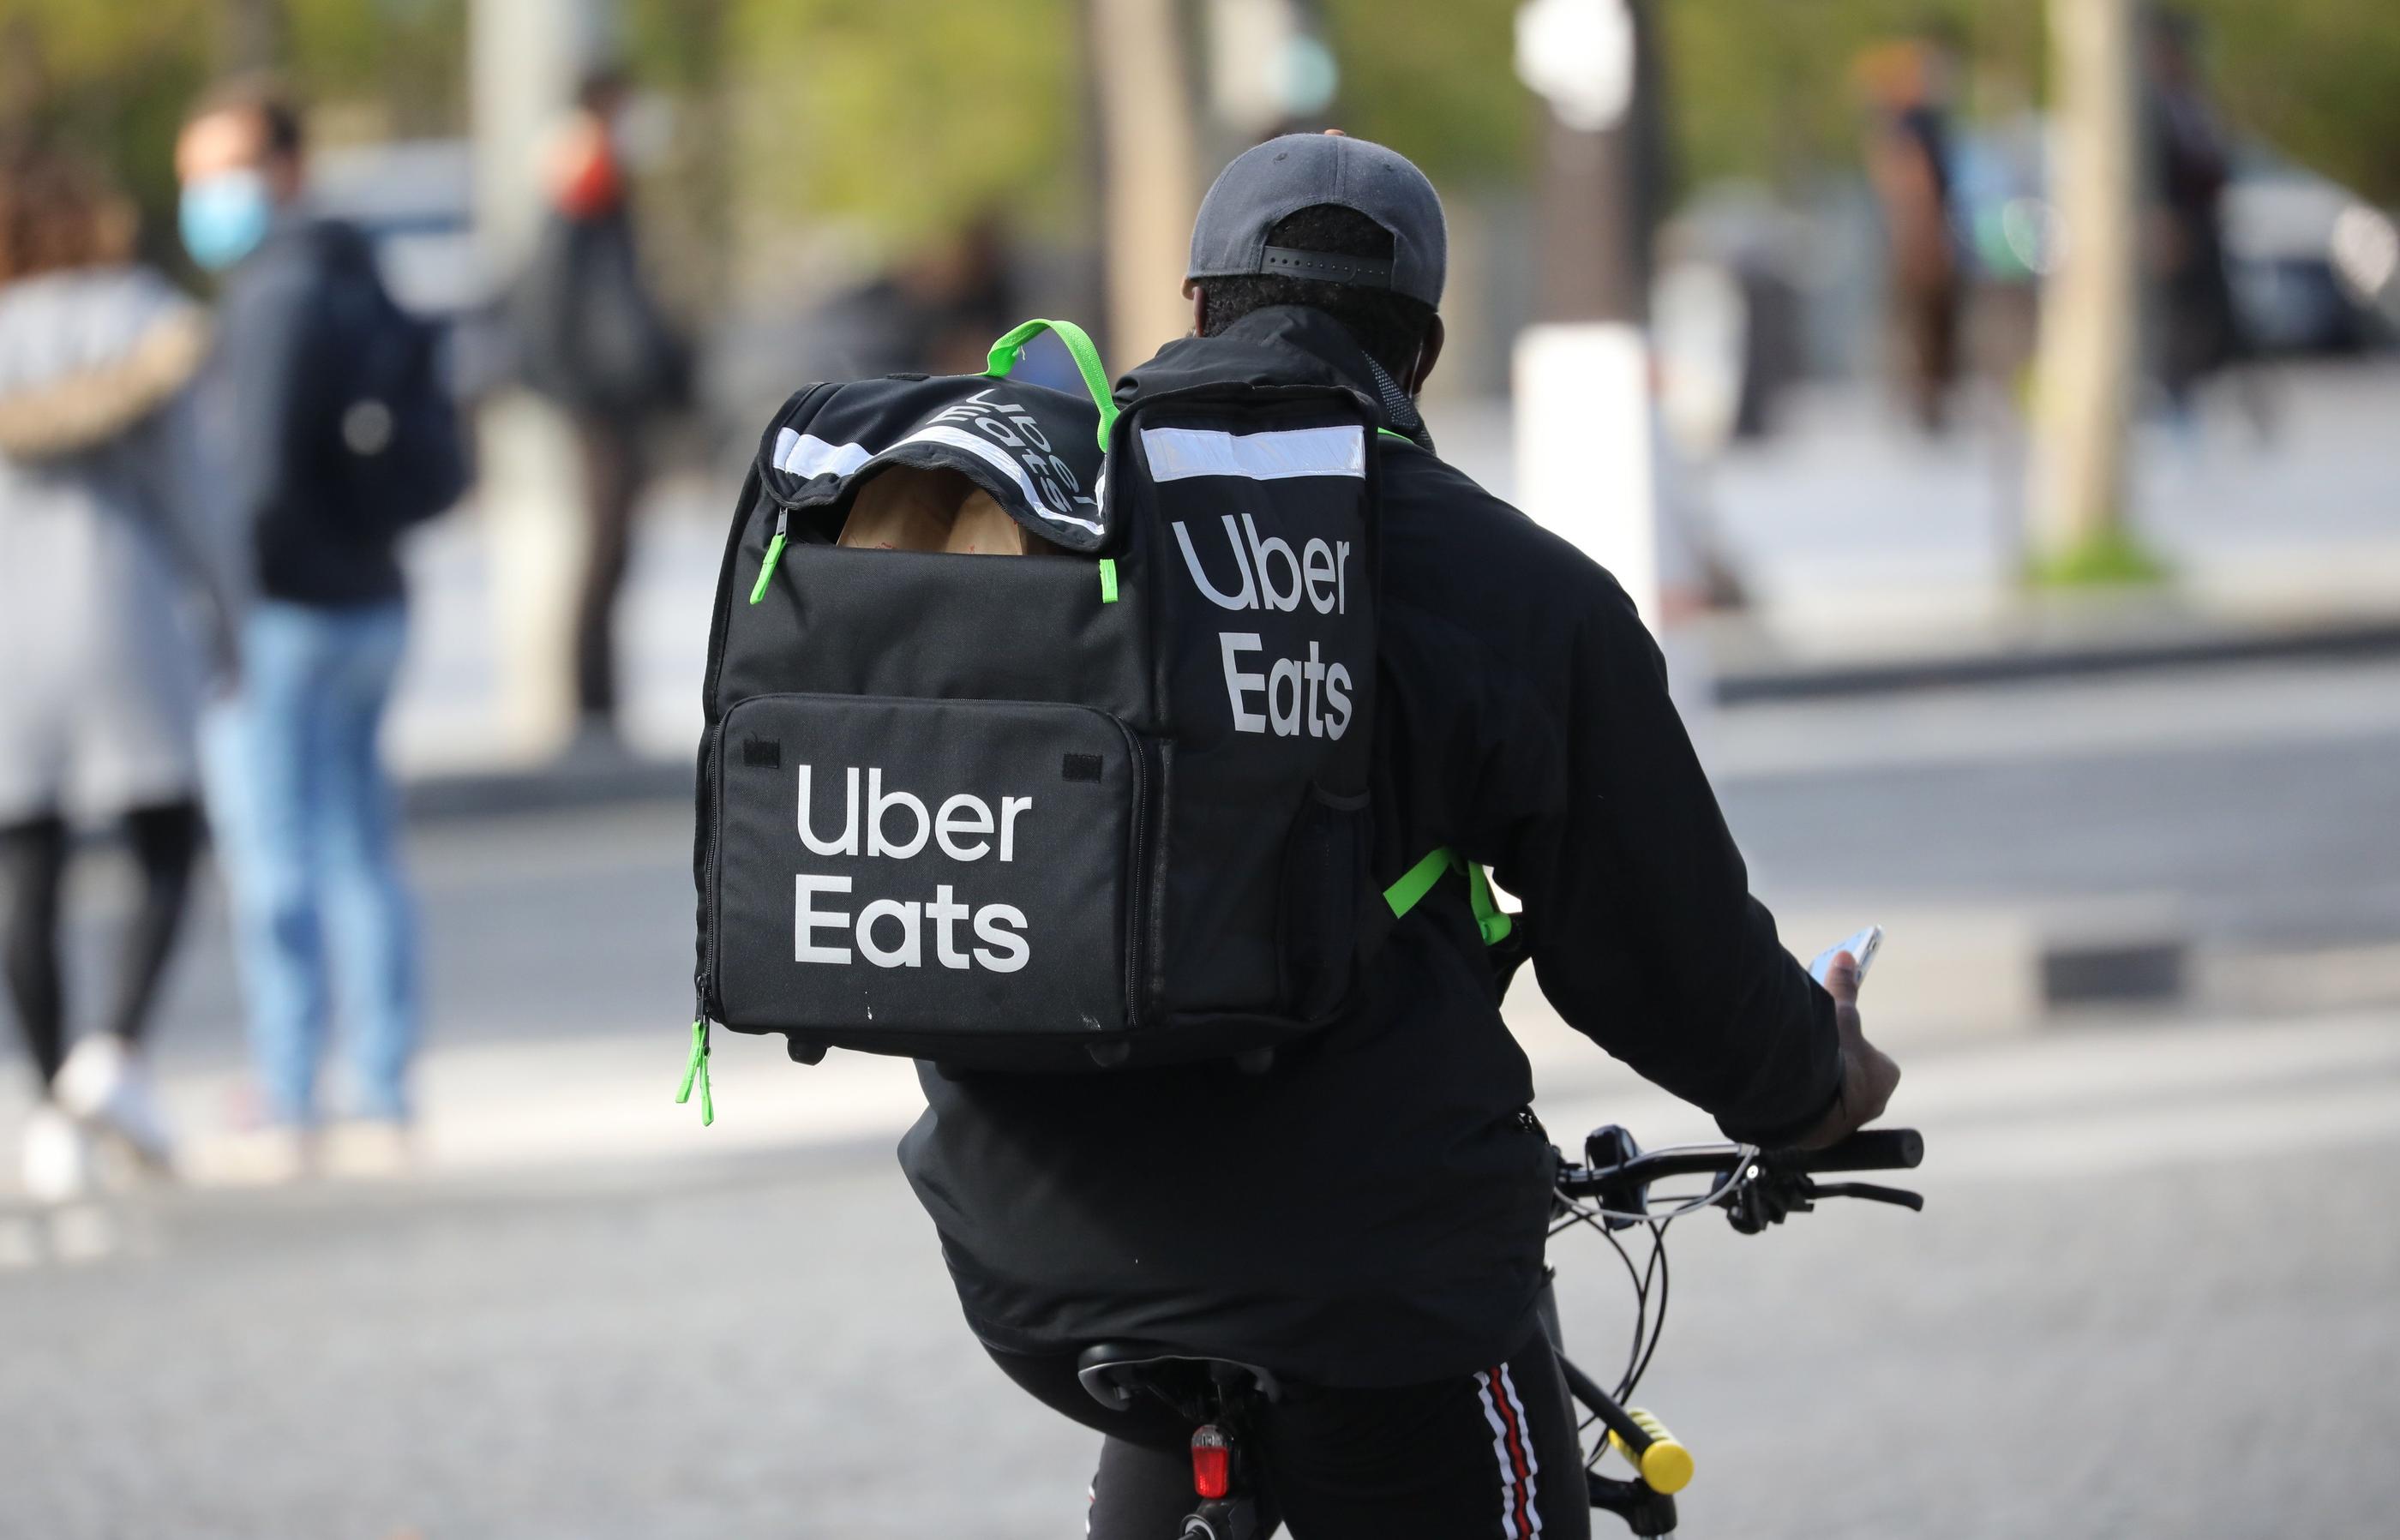 Uber Eats compte en France 65 000 livreurs indépendants qui se connectent à son application. (Illustration) LP/Arnaud Journois